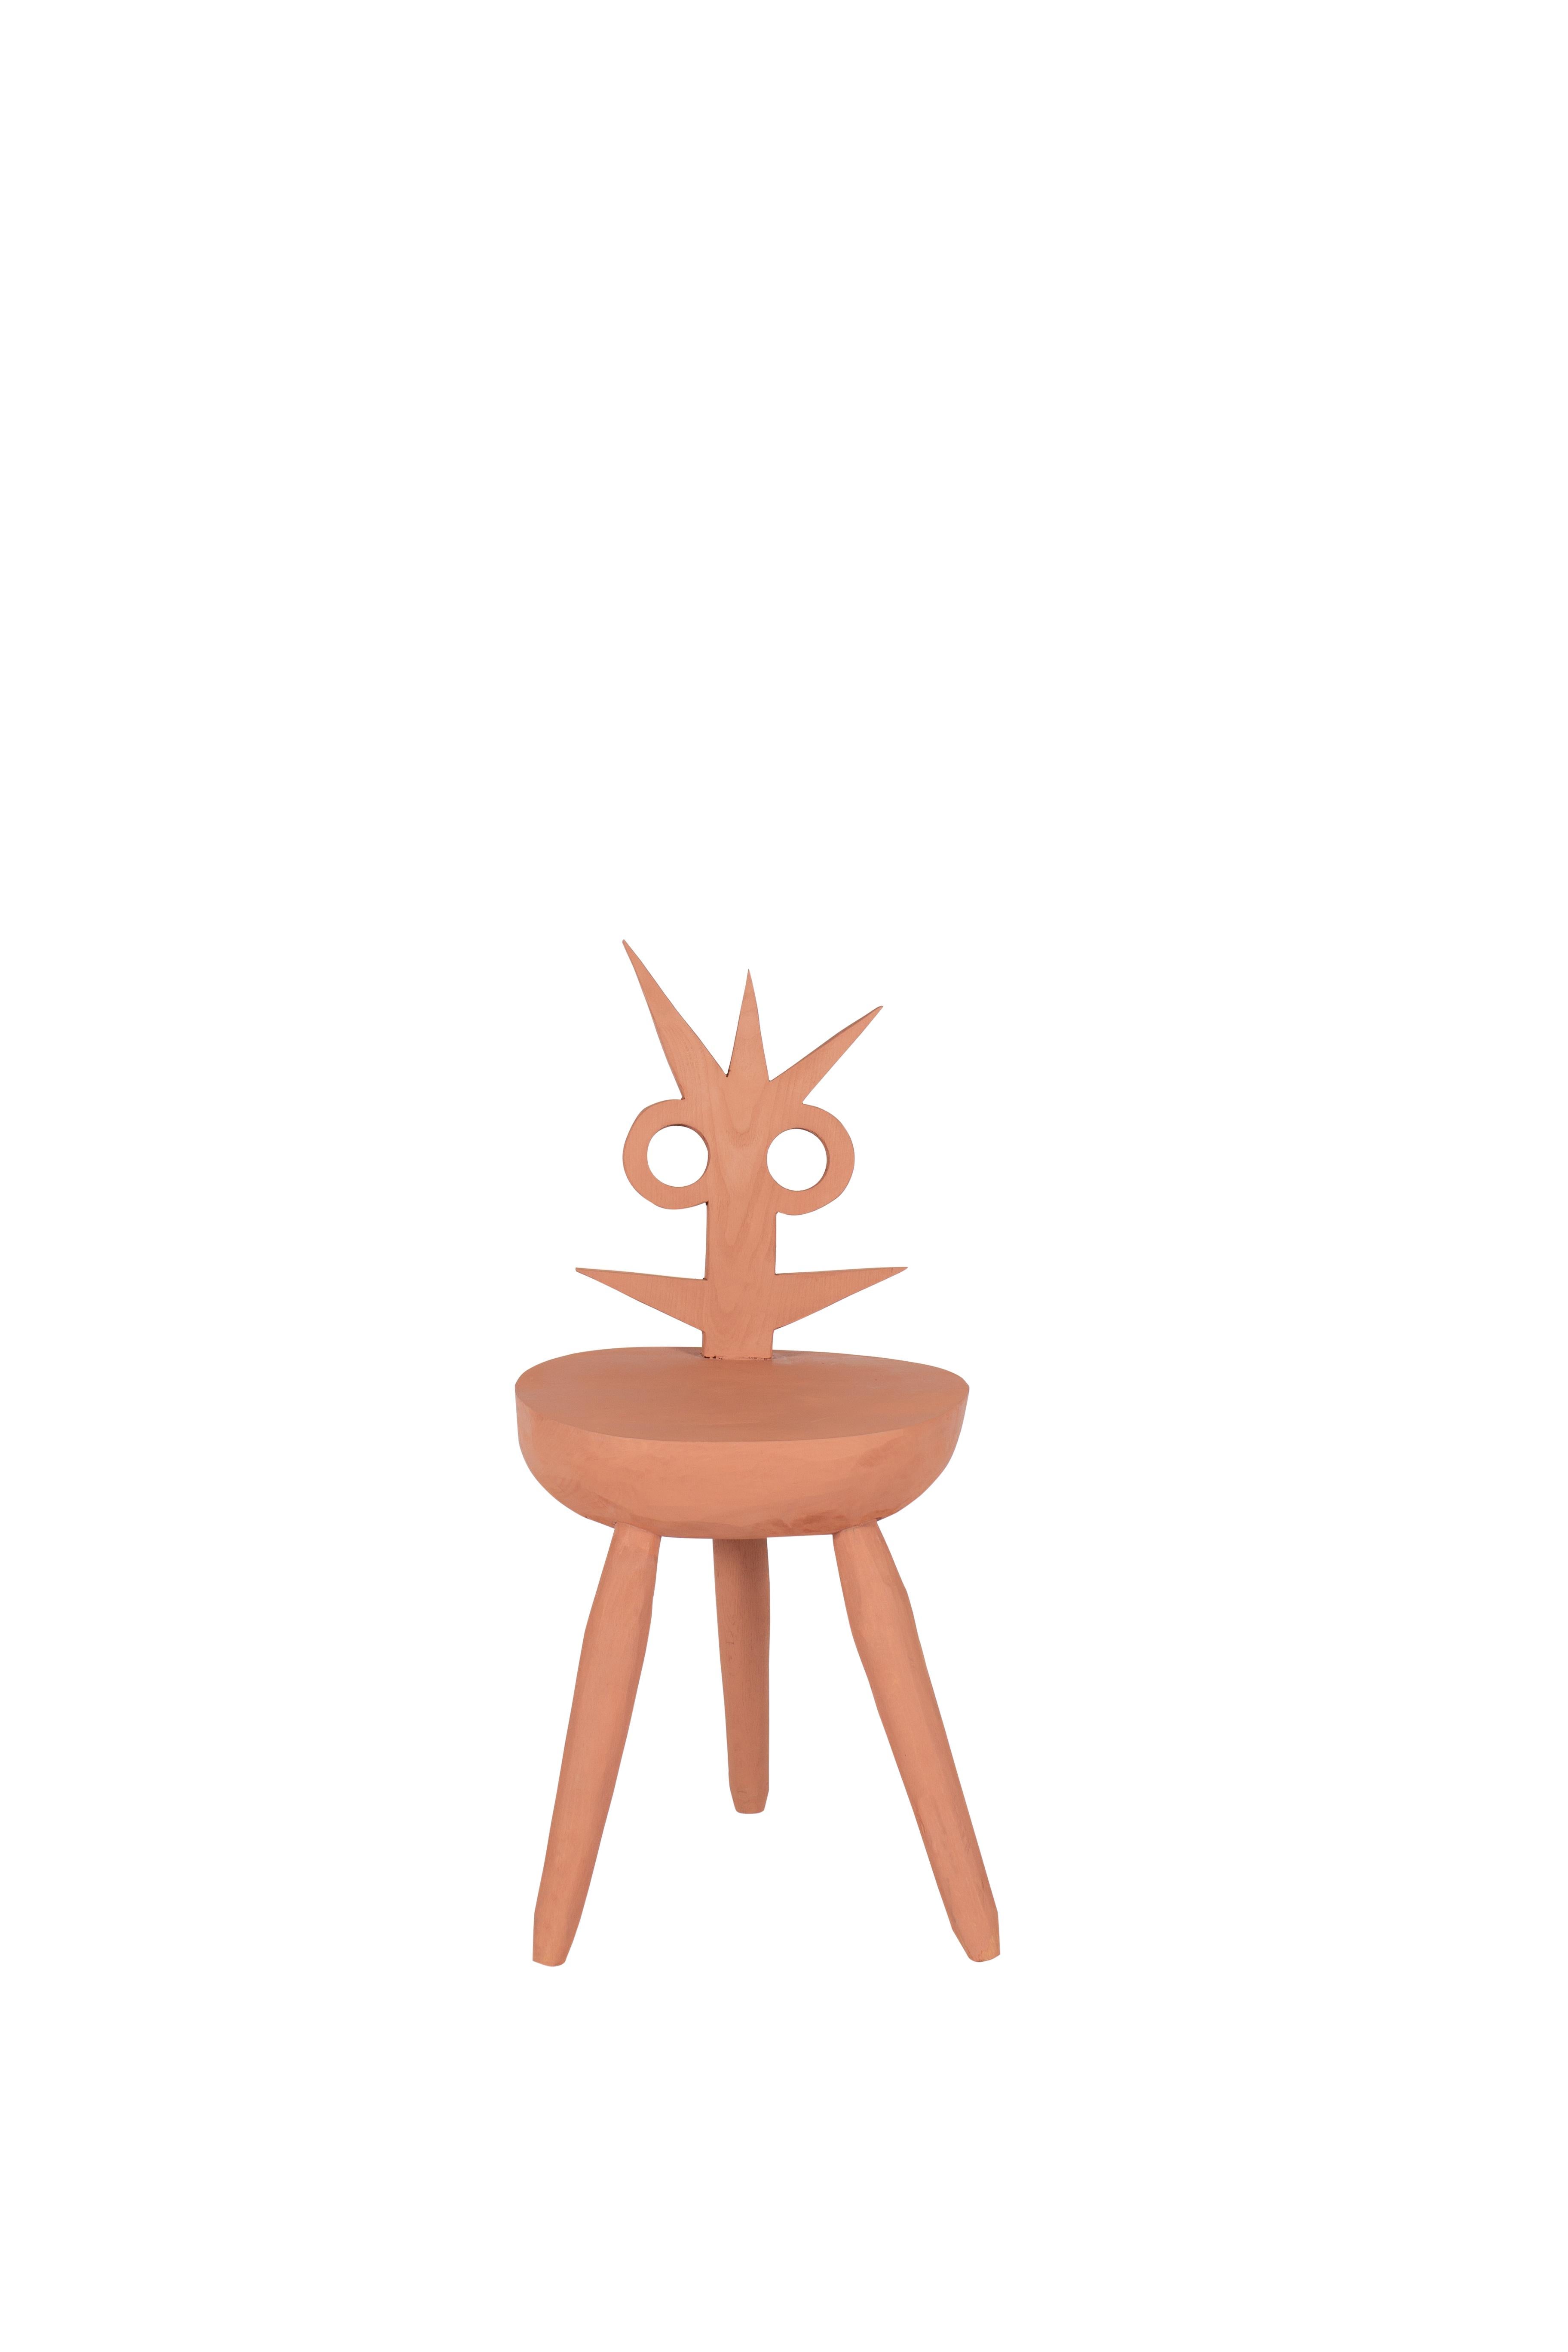 Lumpy Rose-Stuhl von Pulpo
Entworfen von Vasilica lsacescu & Nadja Zerunian.
Abmessungen: T 35 x B 30 x H 77 cm.
MATERIALIEN: Holz.

Auch in schwarz erhältlich. Bitte kontaktieren Sie uns. 

SCHRECKLICH. WOODY. CRAFT.
Gestatten Sie mir, Fester,